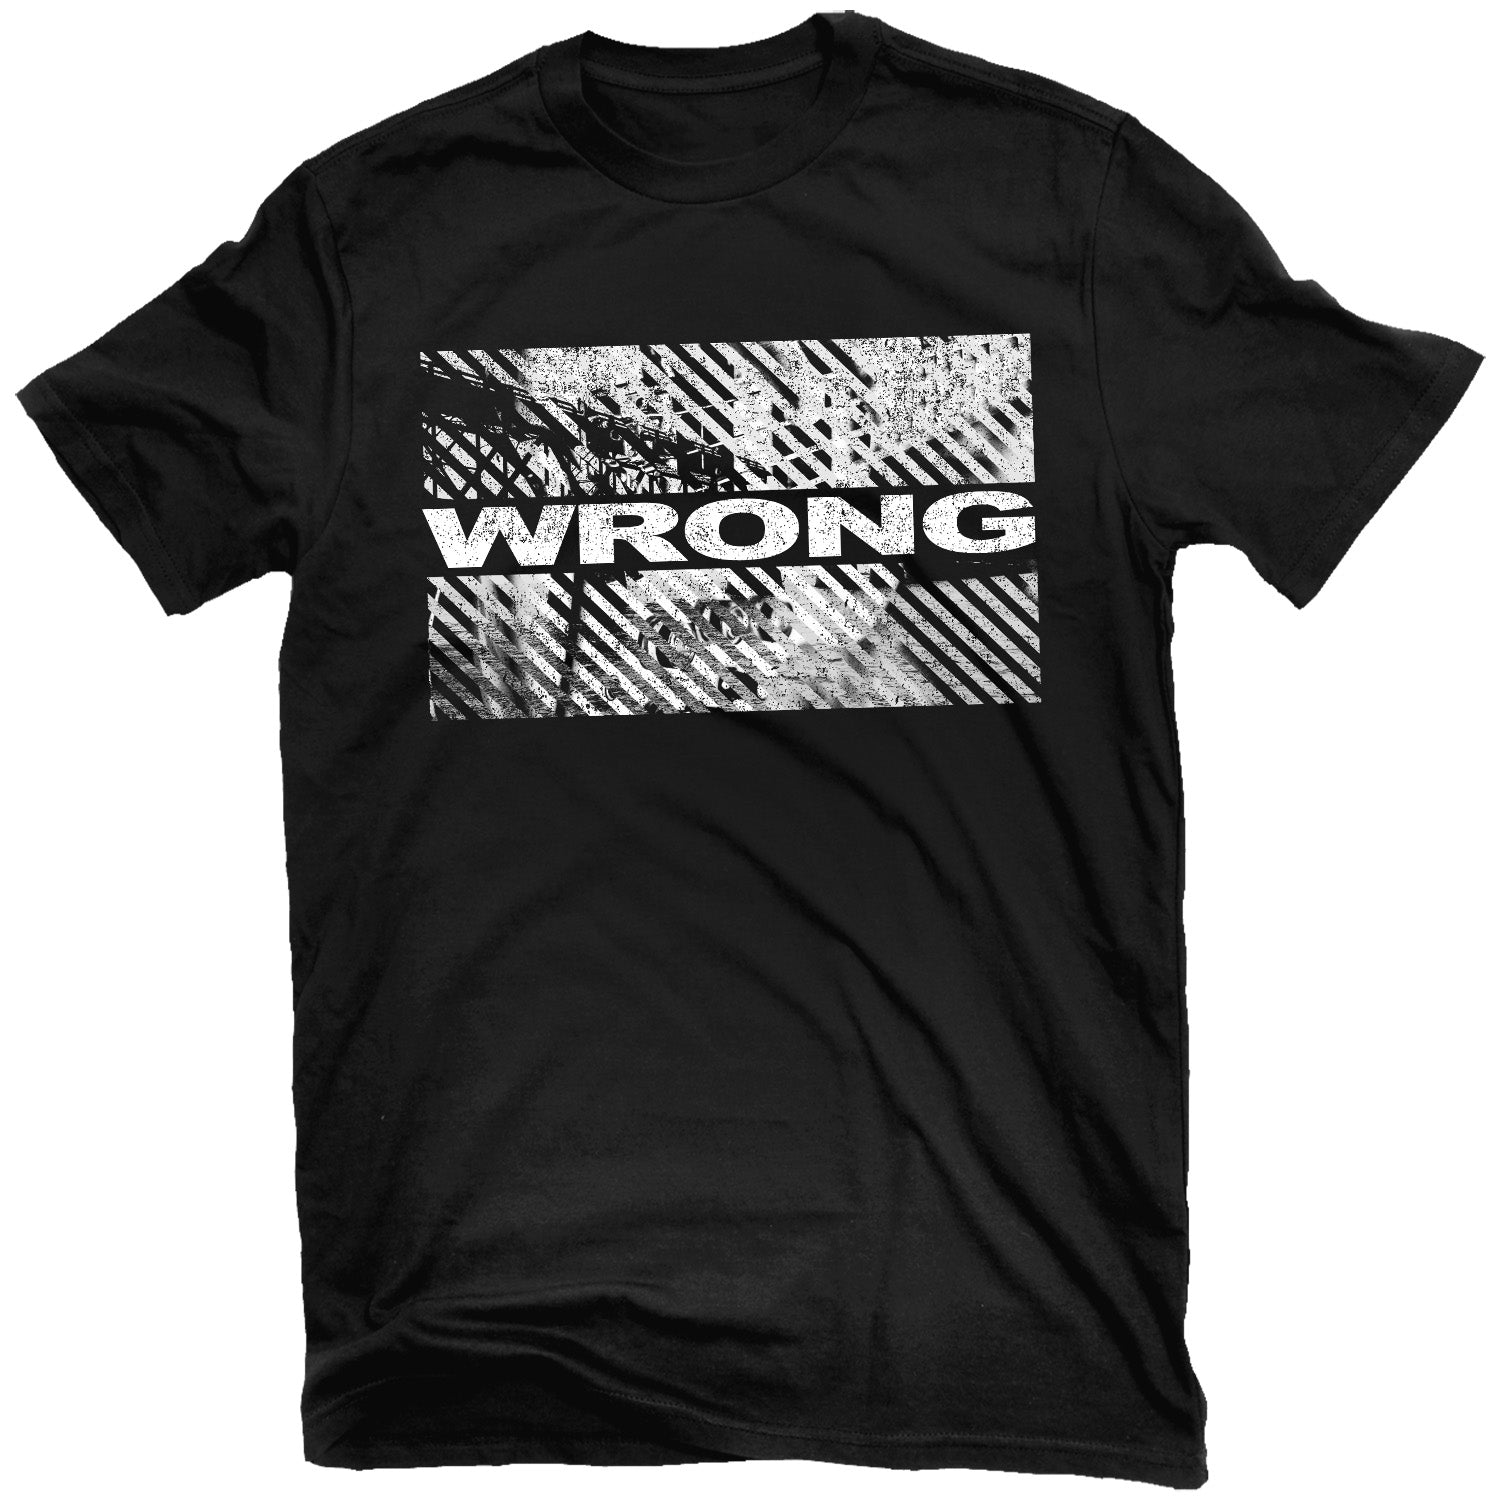 Wrong "Wrong" T-Shirt